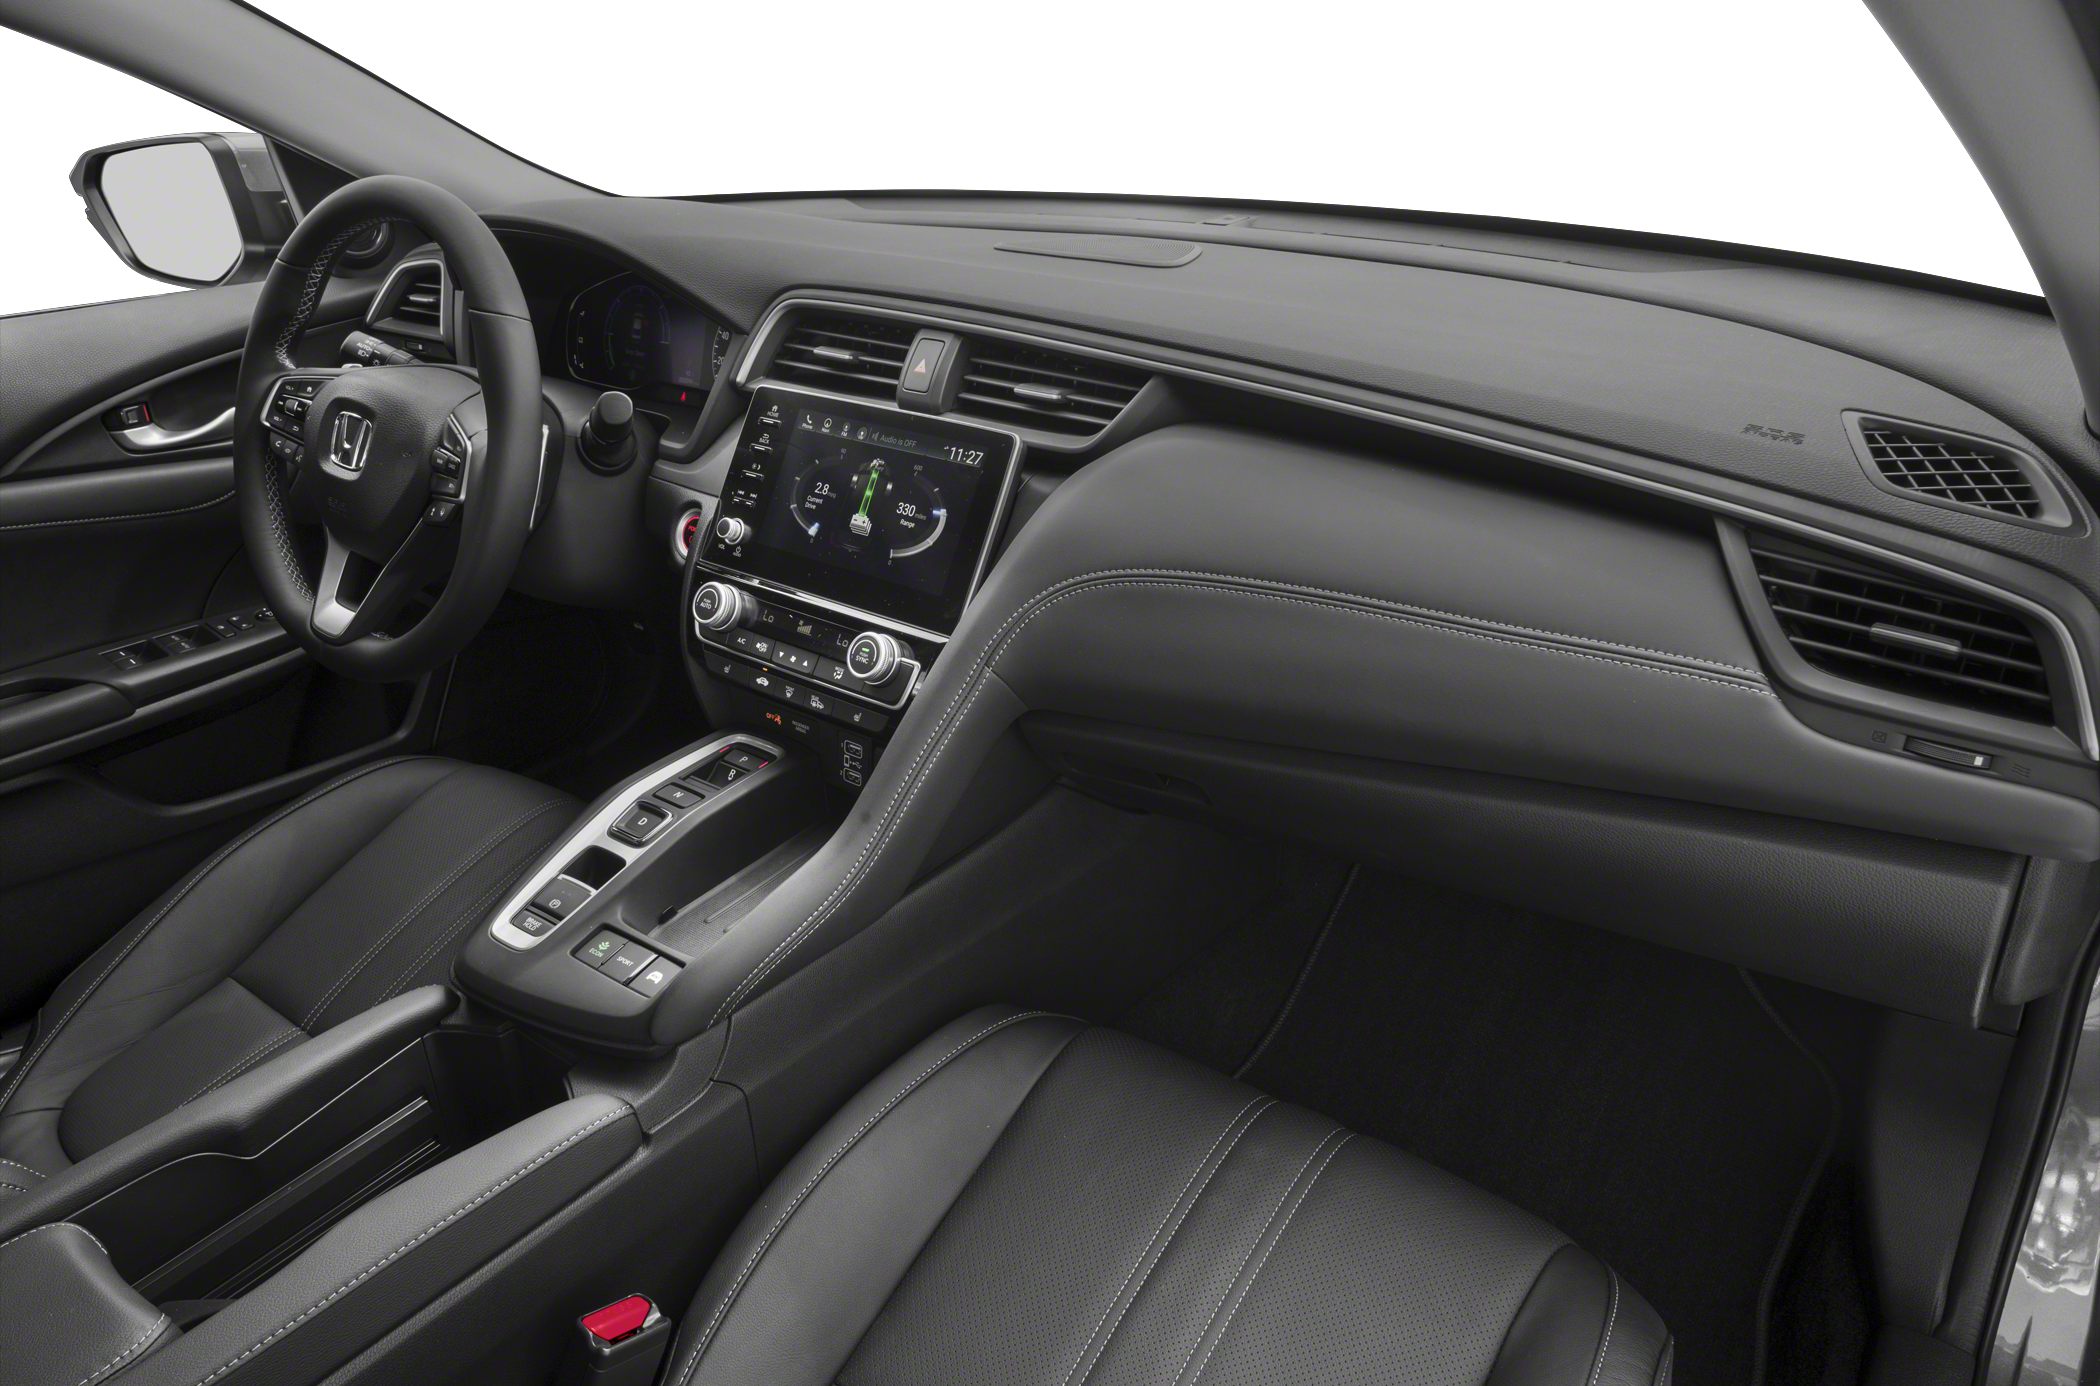 Chi tiết nội thất xe Honda Insight sang trọng 20